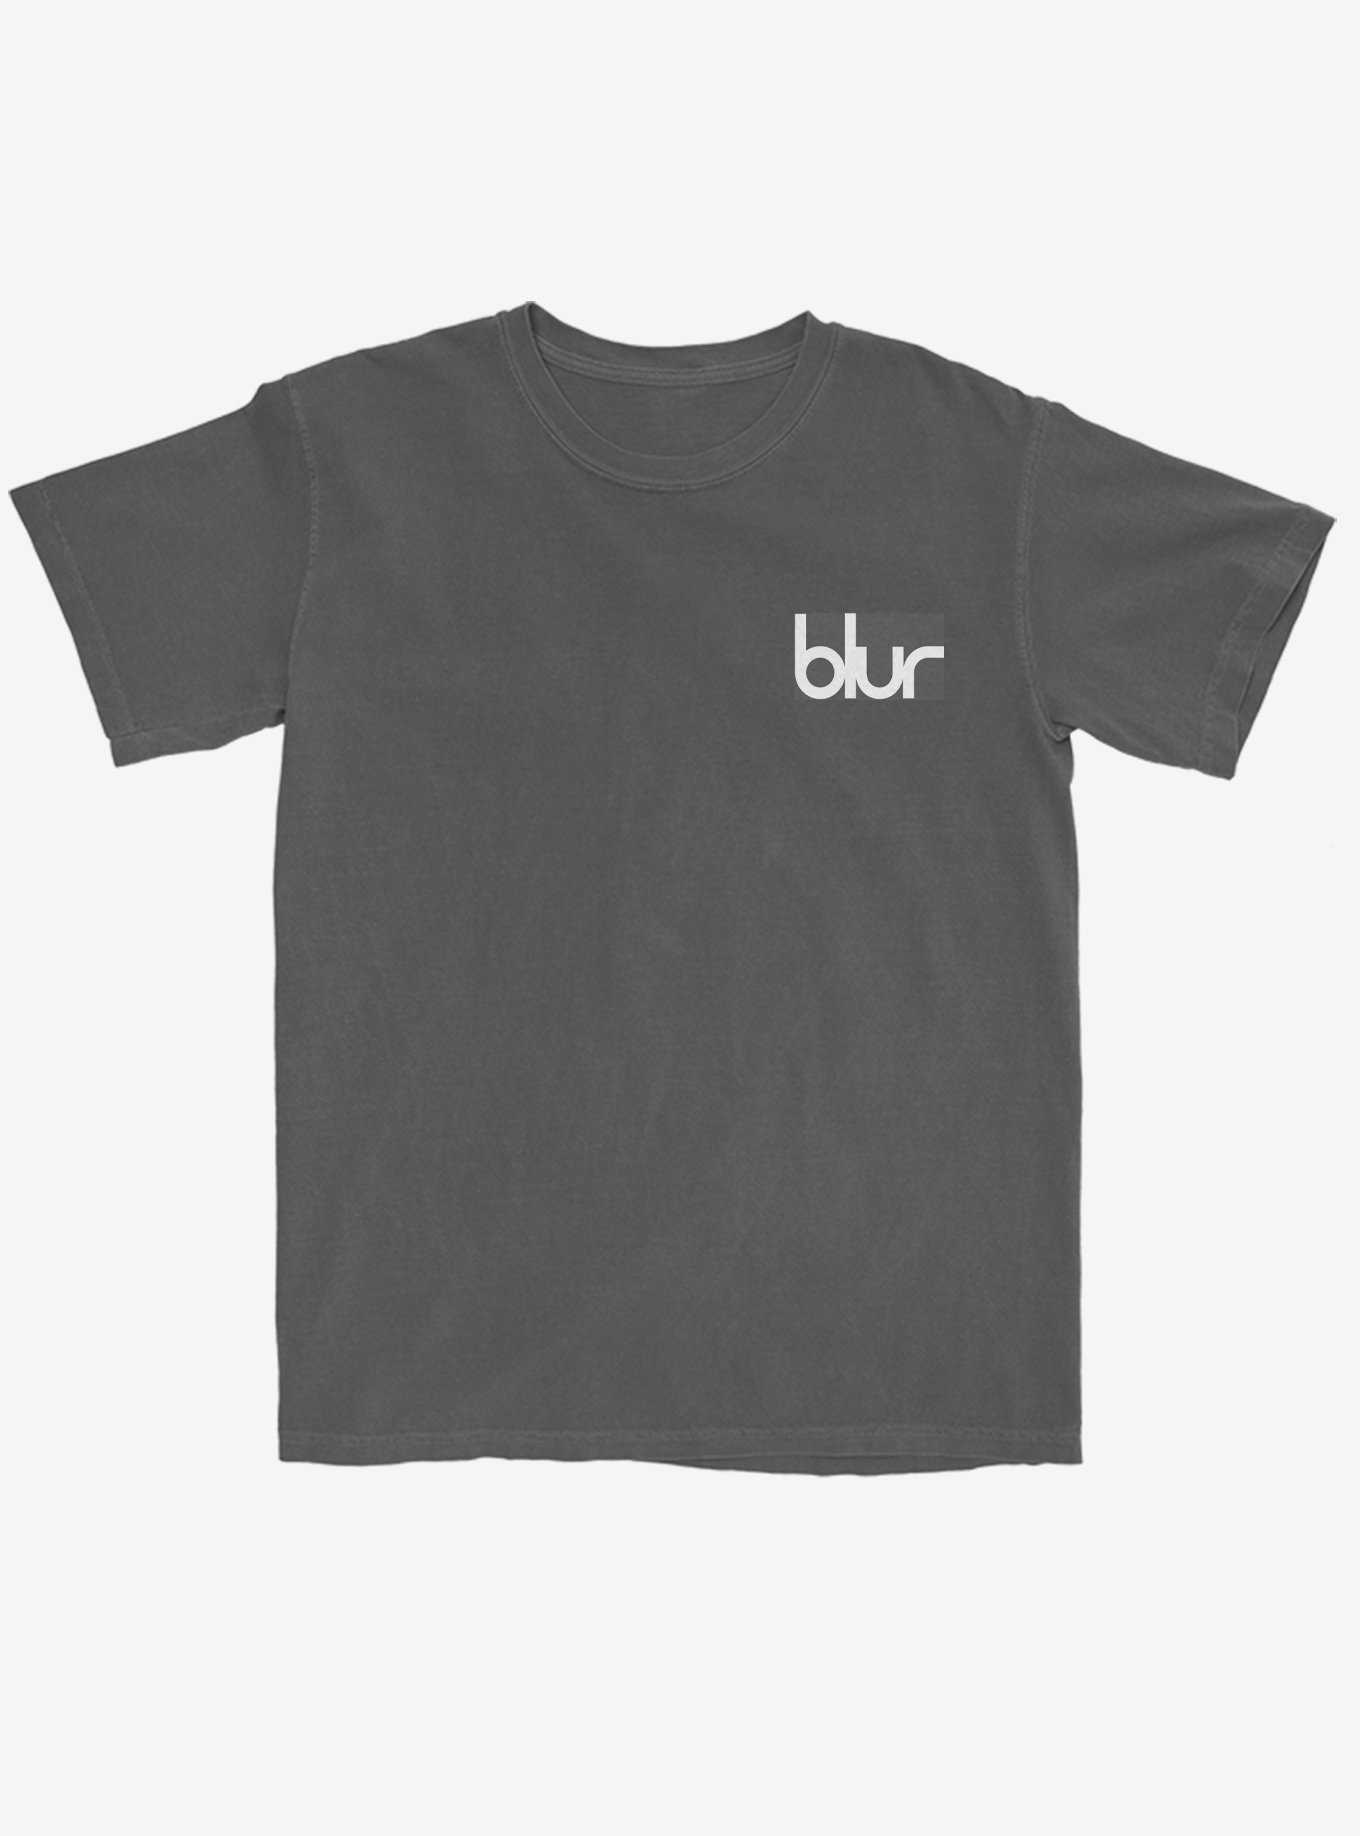 Blur Parklife Boyfriend Fit Girls T-Shirt, , hi-res